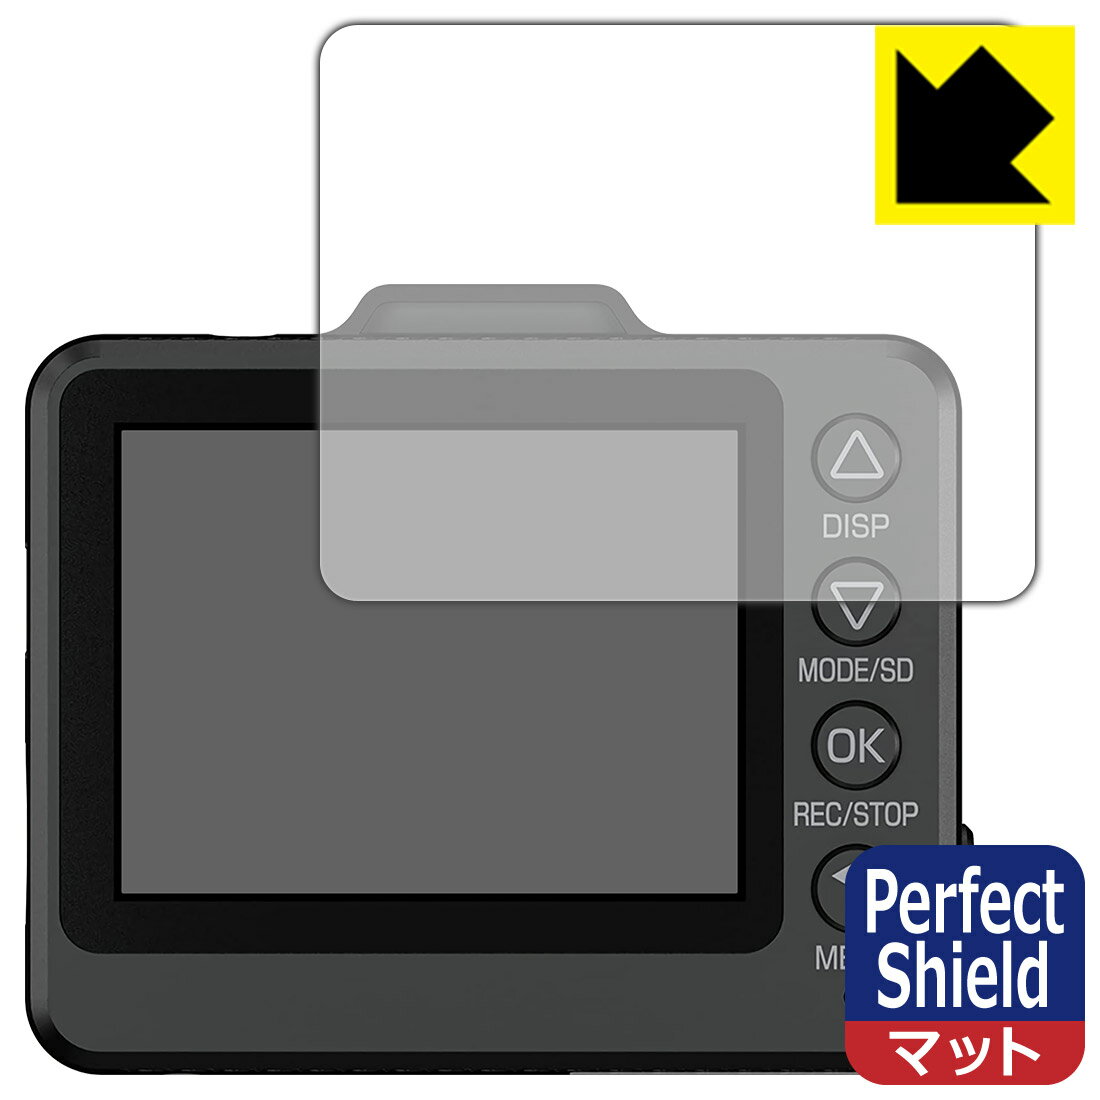 Perfect Shield ドライブレコーダー SN-TW97c 日本製 自社製造直販